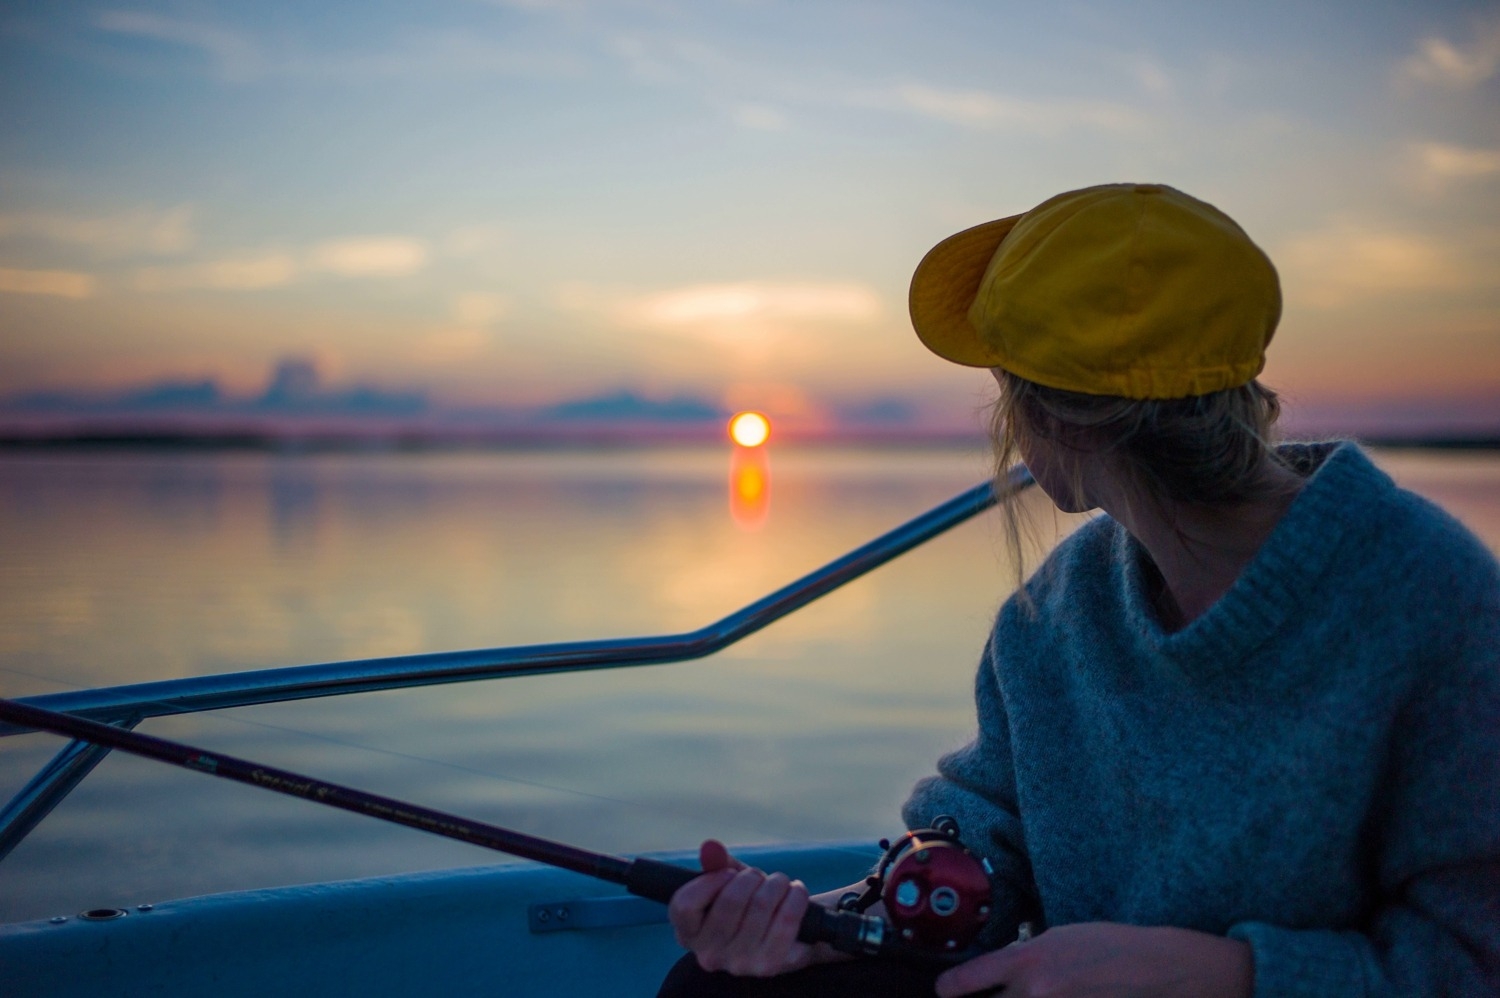 Дикая рыбалка, русская баня и настоящий интернет-детокс: путешествие на озеро Селигер